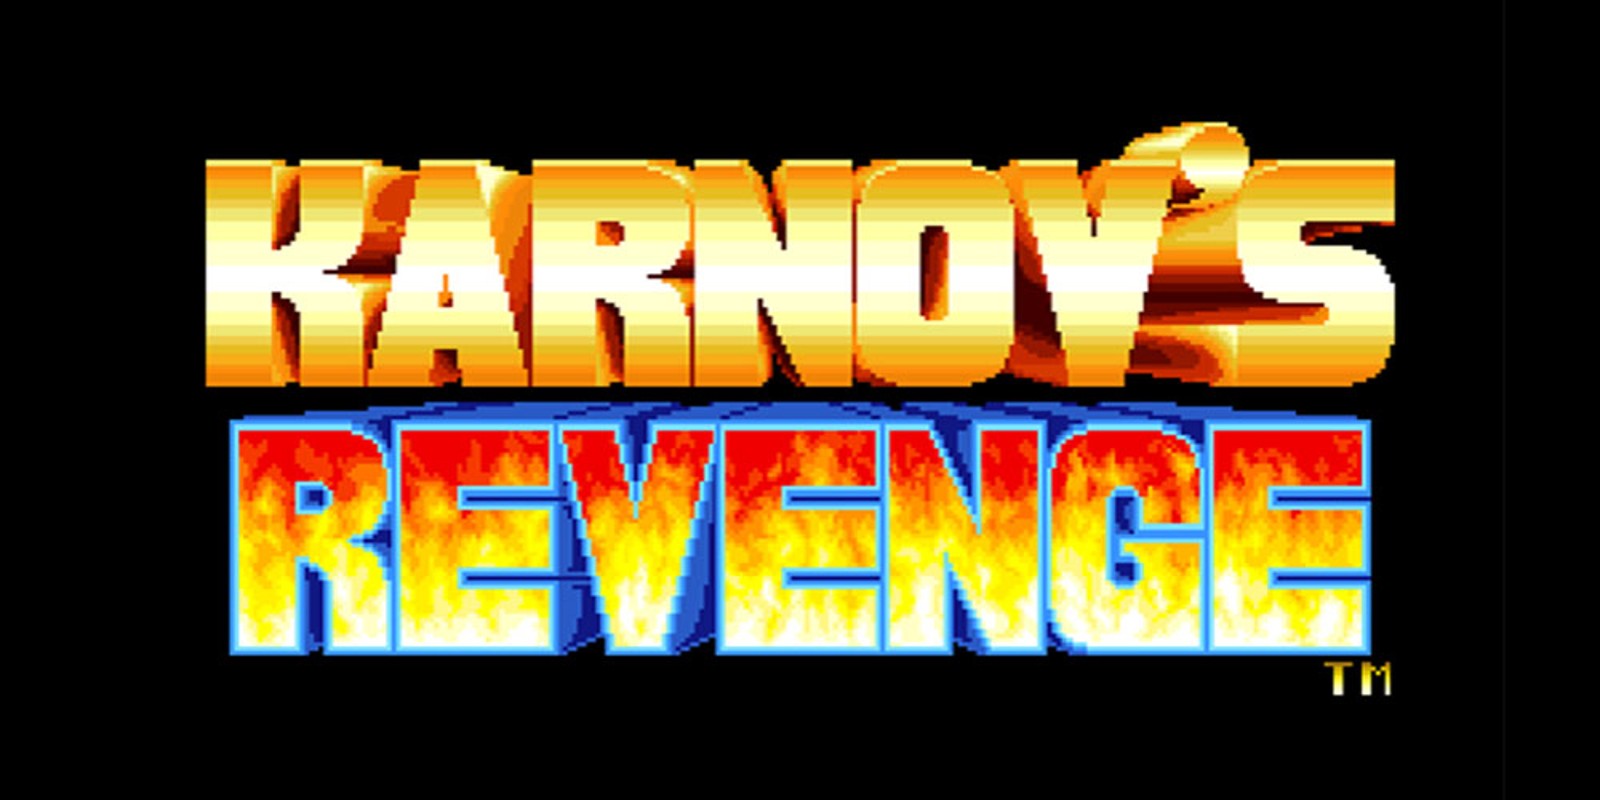 KARNOV'S REVENGE